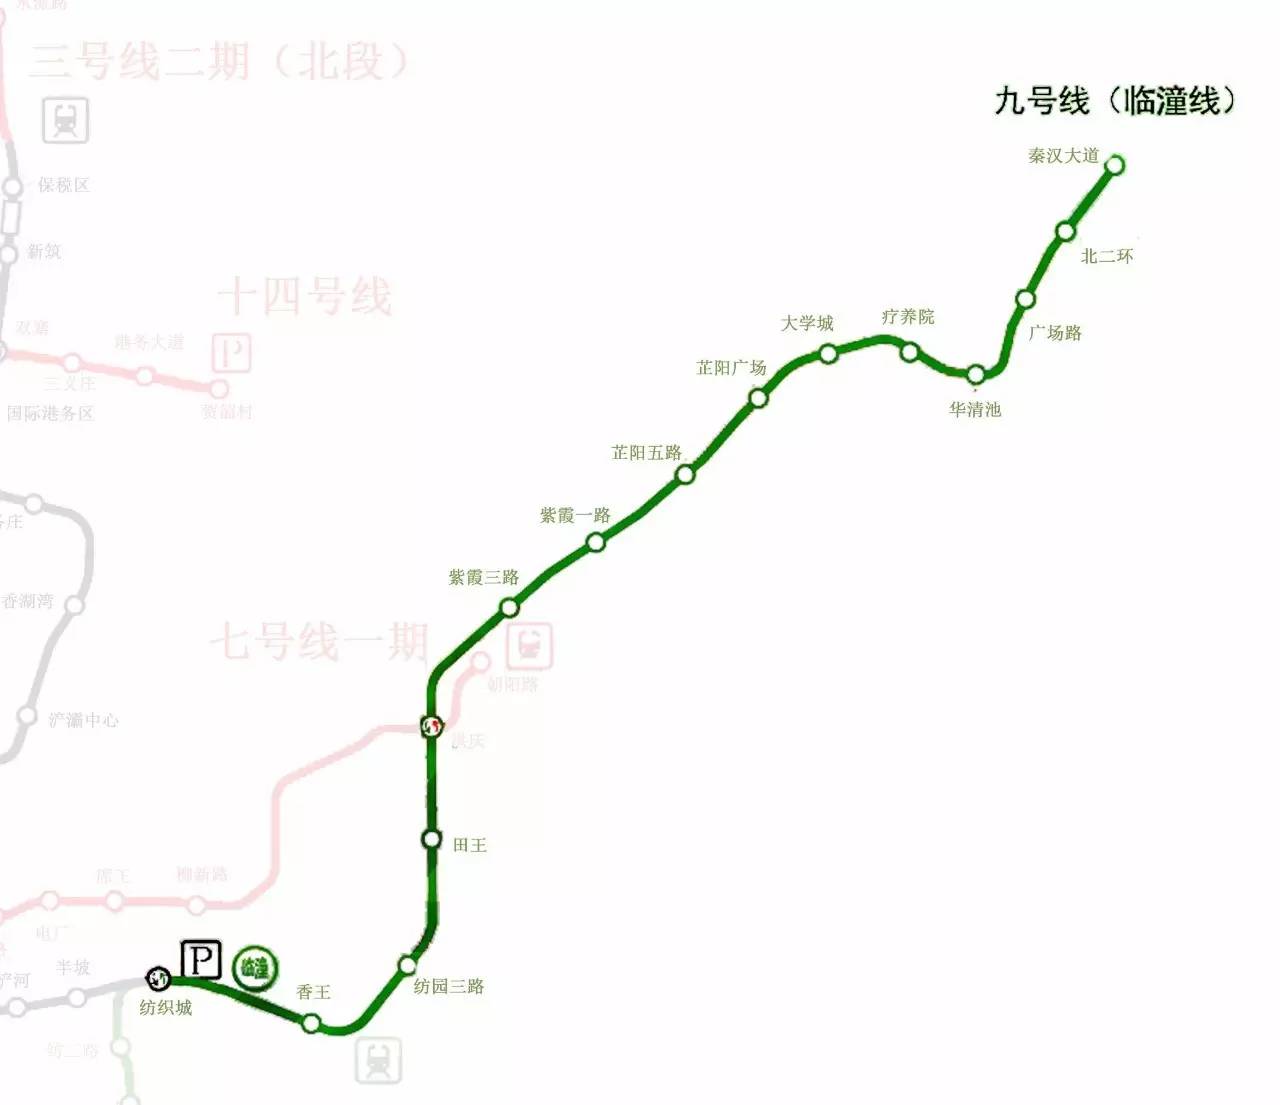 【陕西传媒网】西安地铁4号线预计明年通车 2020年9号图片